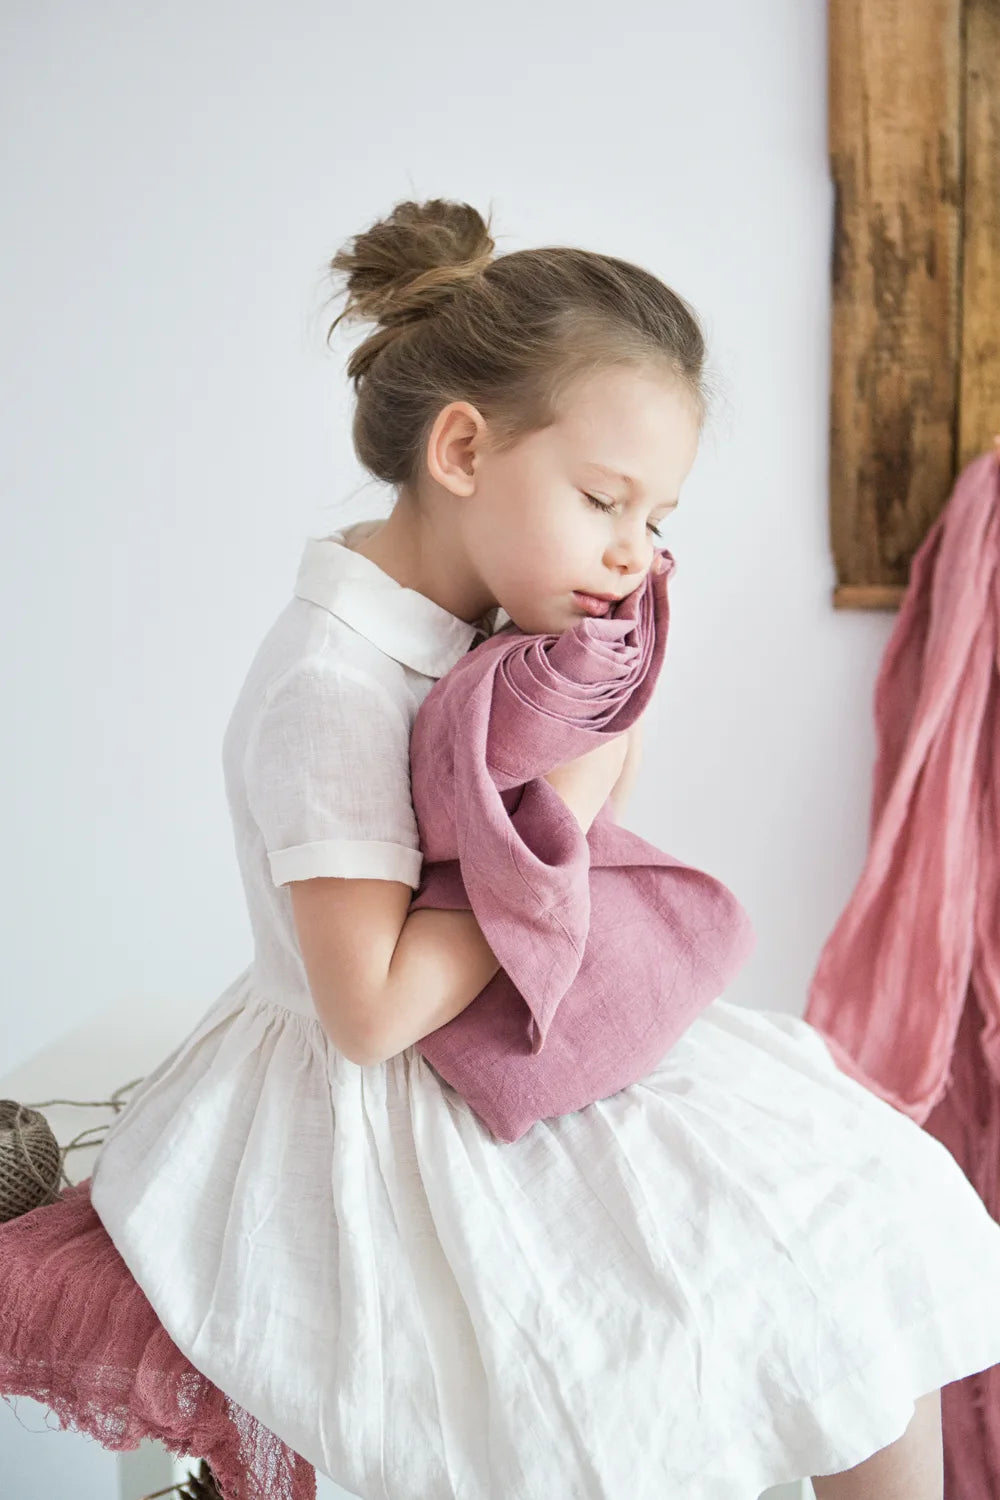 Linen lark hand dyed linens cloth in hands of little girl in white dress